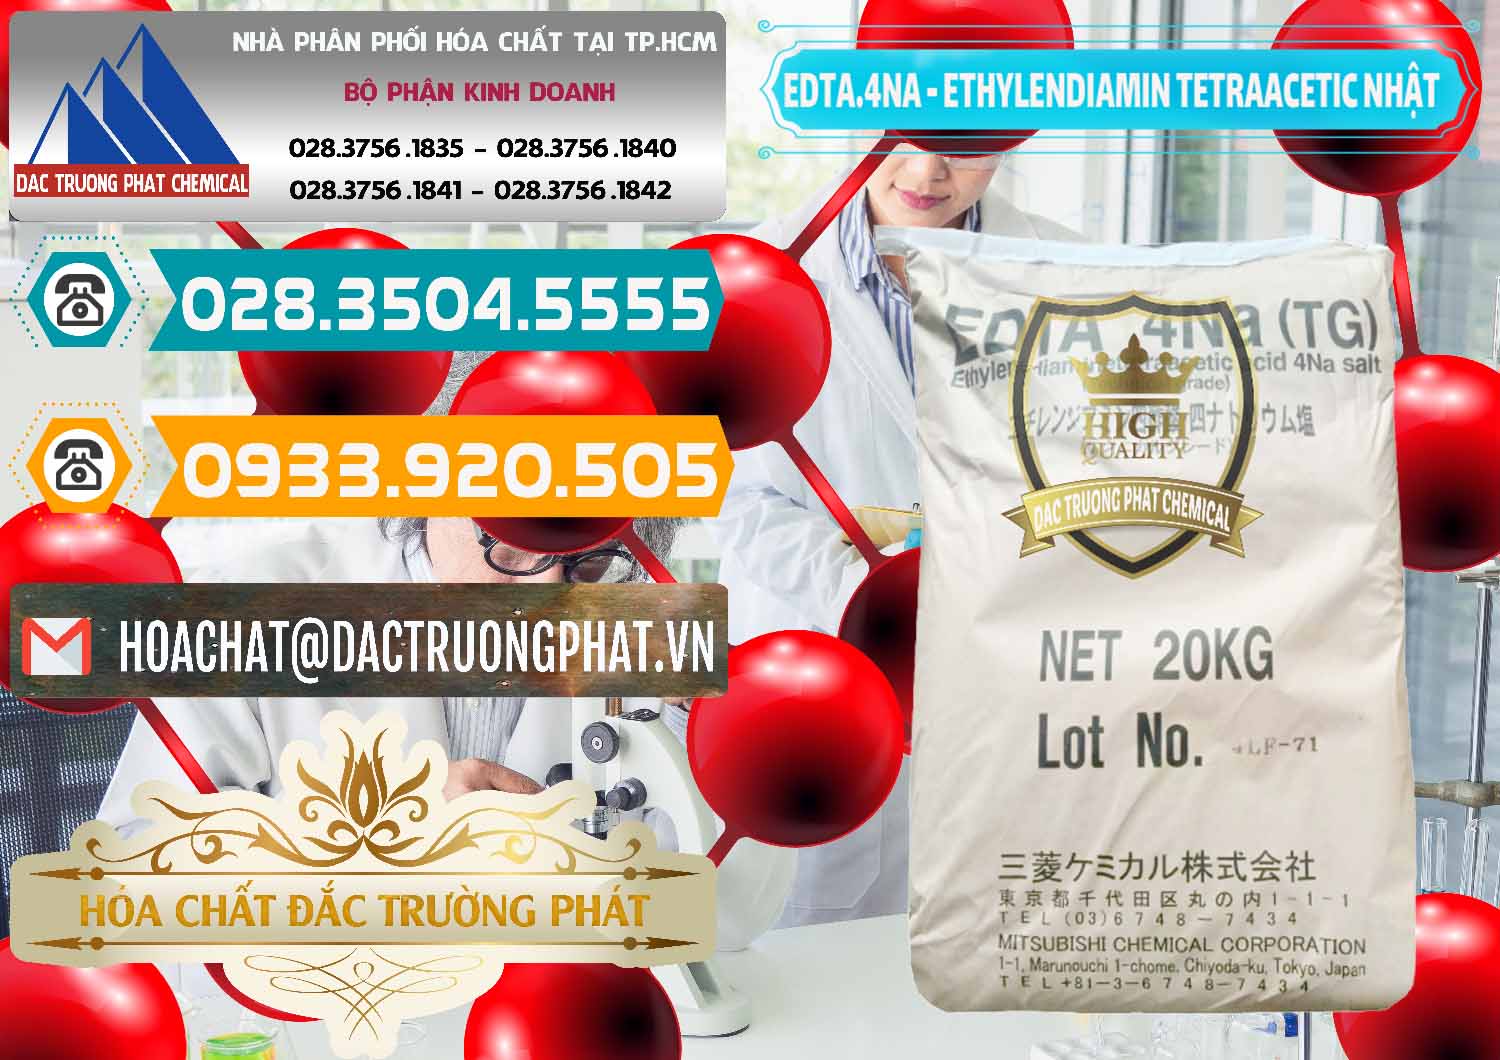 Cty chuyên kinh doanh ( bán ) EDTA 4Na - Ethylendiamin Tetraacetic Nhật Bản Japan - 0482 - Đơn vị chuyên bán - cung cấp hóa chất tại TP.HCM - congtyhoachat.vn